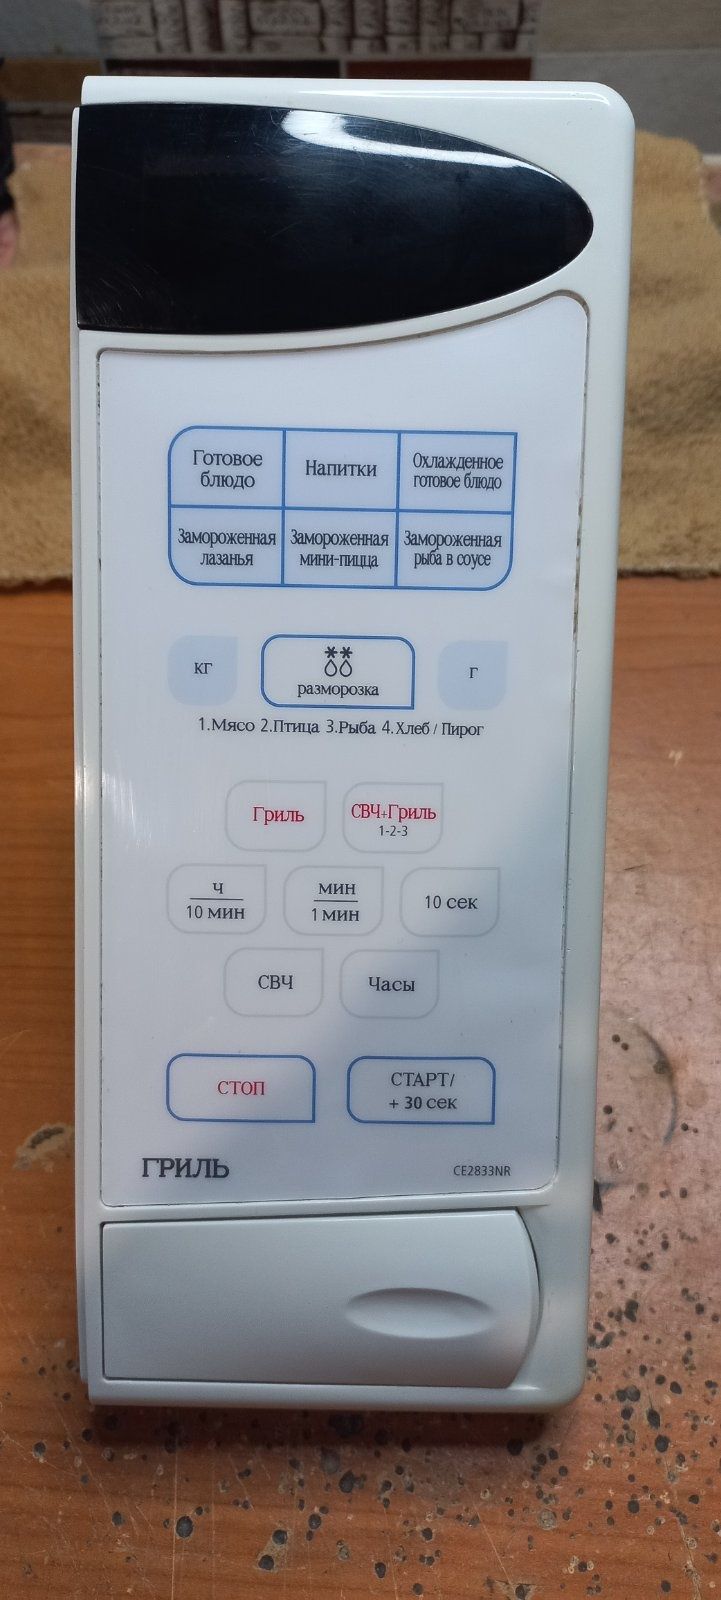 Микроволновая печь Samsung CE 2833NR. Панель управления(модуль).Плата.